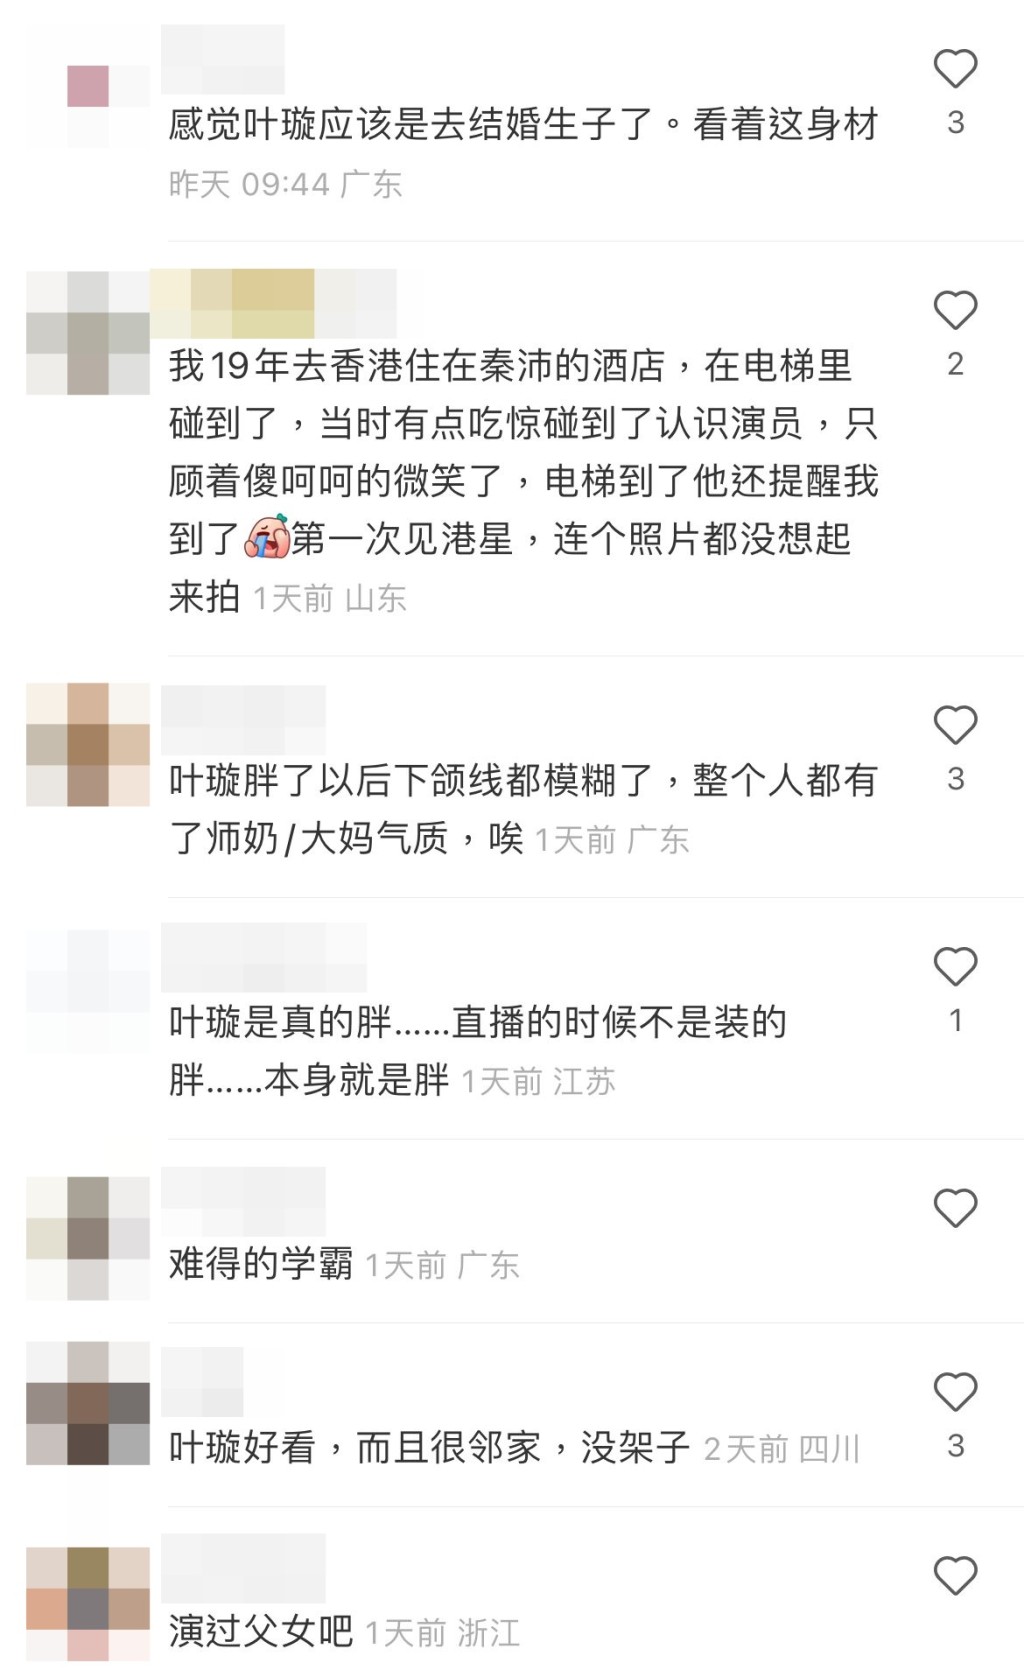 网民又狠批叶璇阵阵师奶、大妈味。